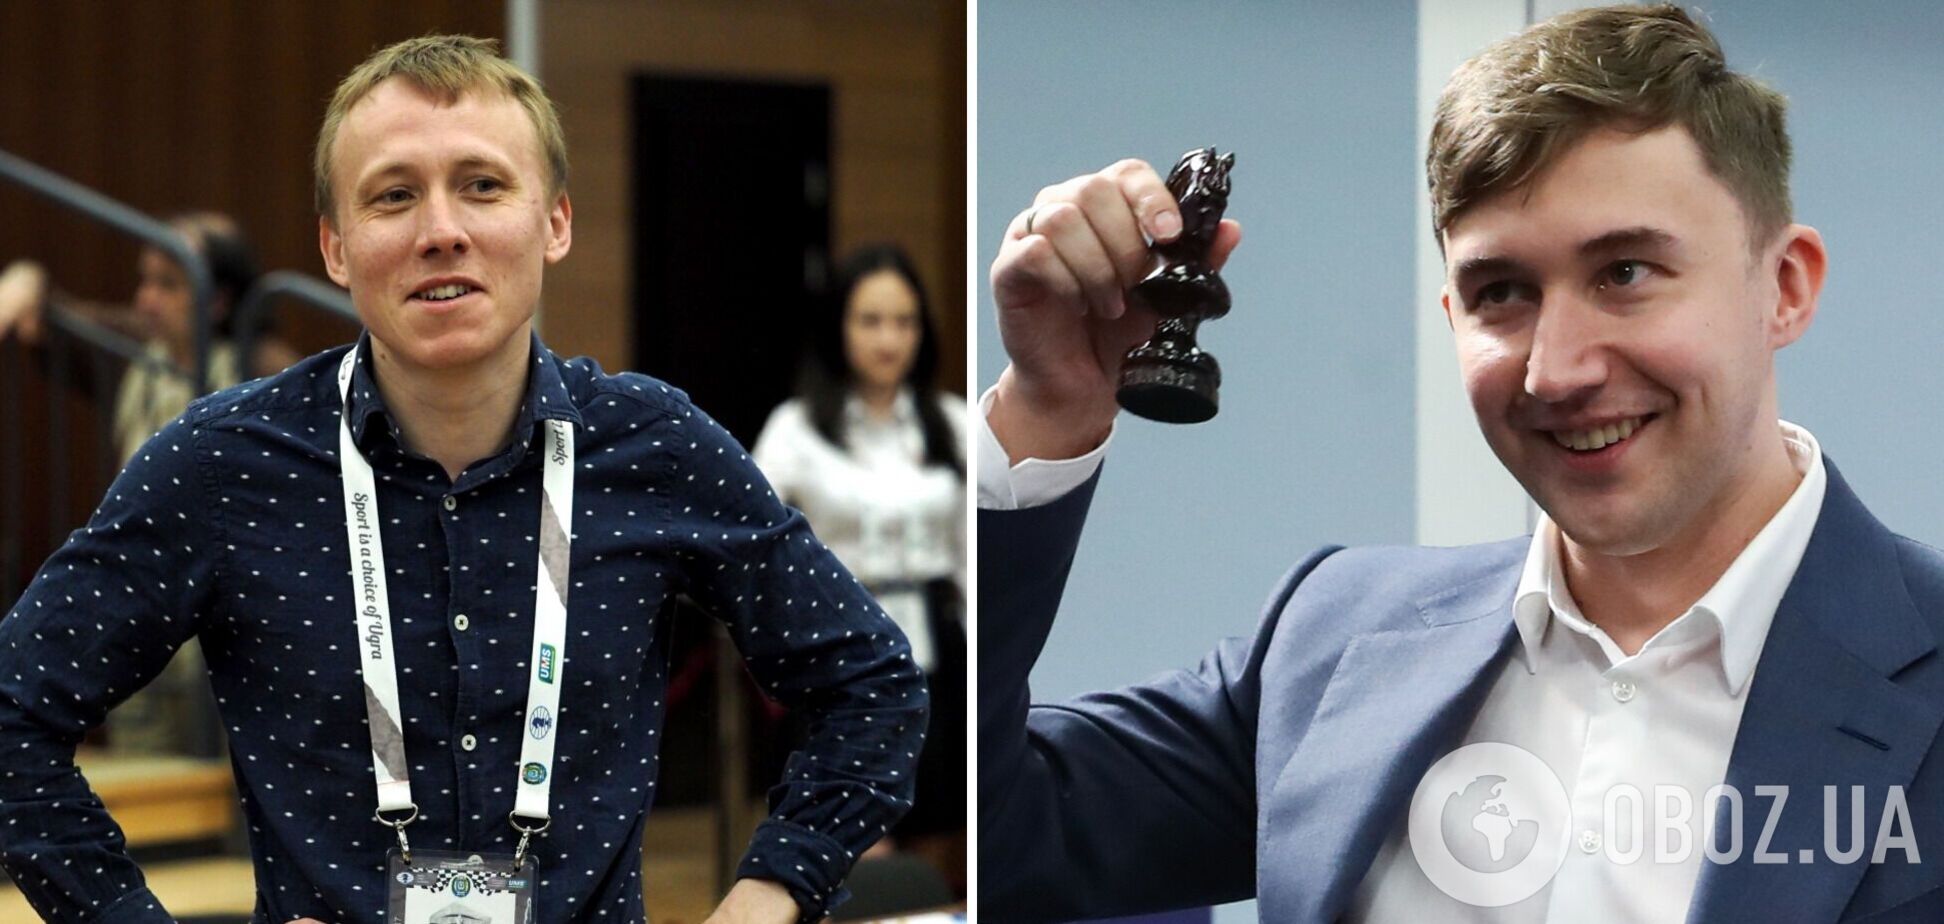 'У мозку щось змінюється': чемпіону світу, який зрадив Україну, поставили діагноз